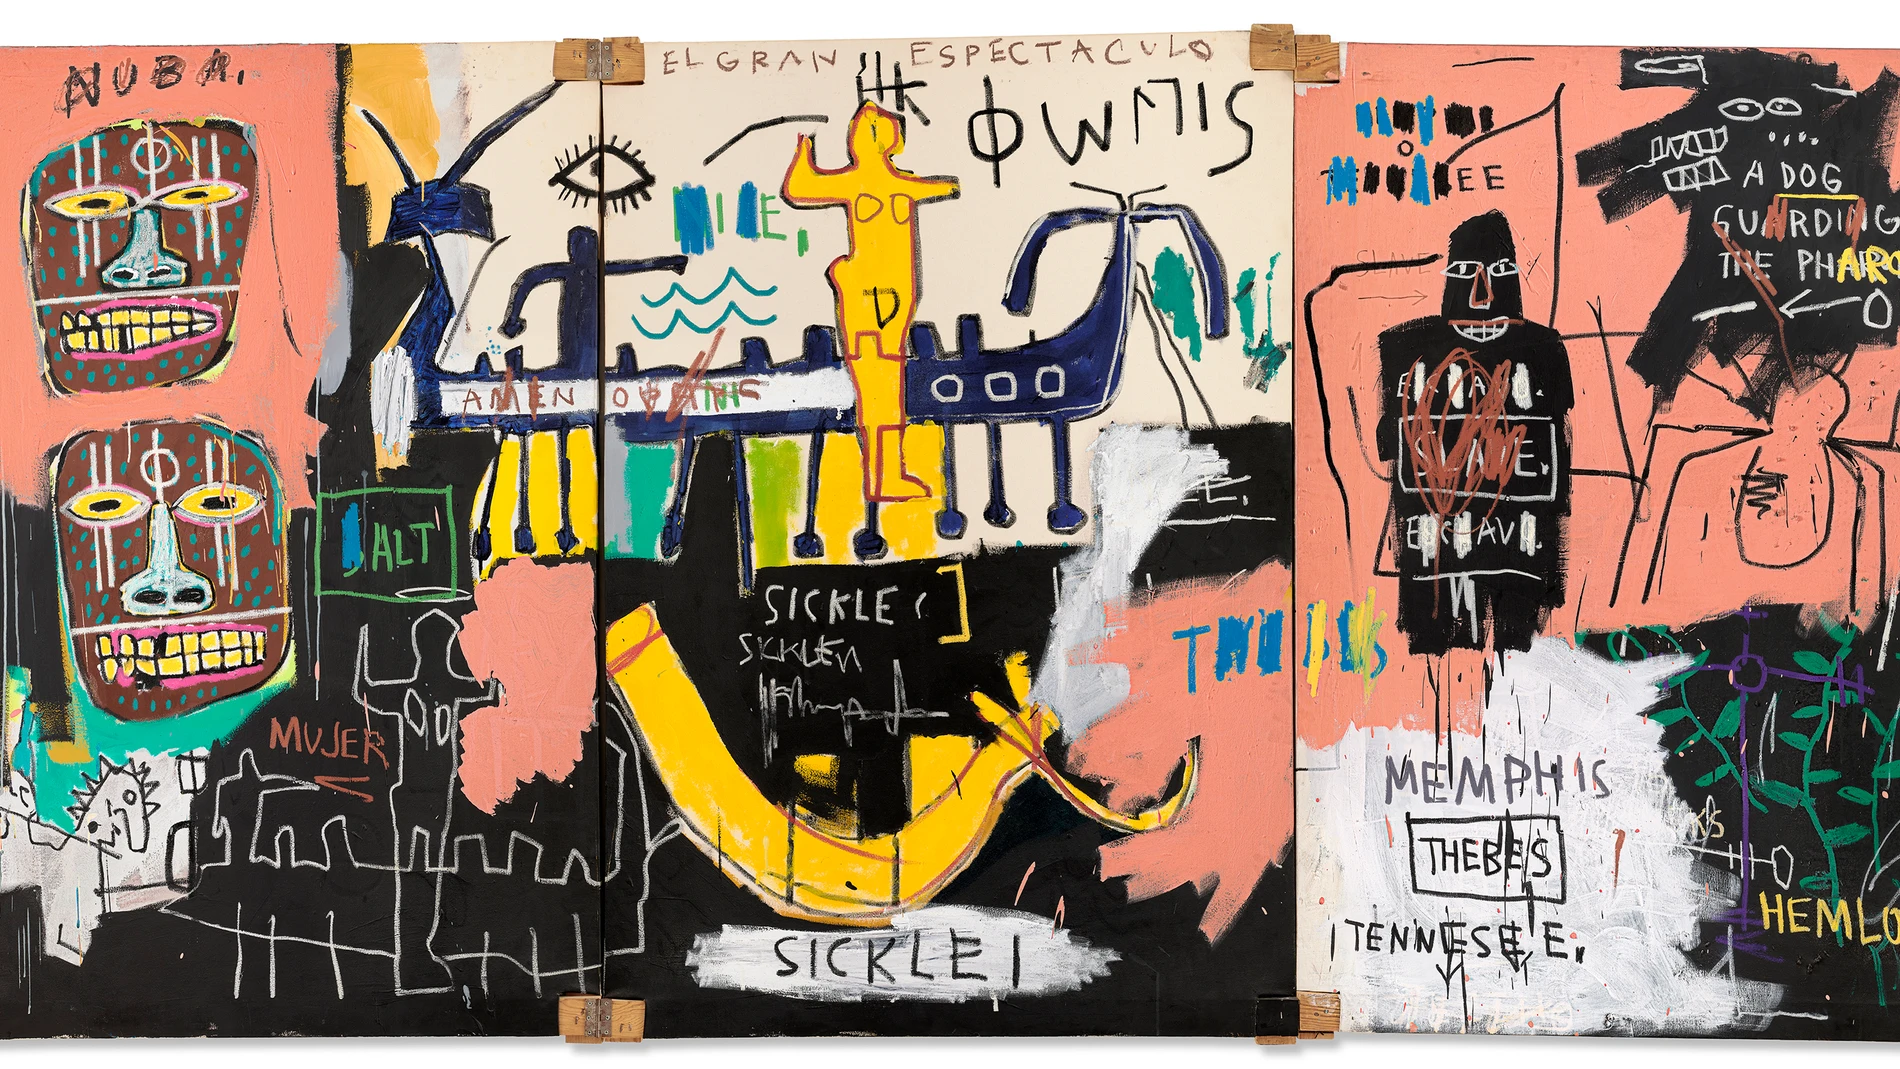 USA7162. NUEVA YORK (NY, EEUU), 15/05/2023.- Fotografía cedida por Christie's donde se aprecia la obra "El gran espectáculo (The Nile)" (1983), un lienzo de un joven Jean Michel Basquiat que alude a la migración en África, el comercio de esclavos o la lucha por los derechos civiles, que fue vendida este lunes por 67,1 millones de dólares (61,7 millones de euros) en una subasta organizada por esta casa de subastas, hoy en Nueva York (EE. UU). El cuadro de Basquiat supera así ampliamente los 45 millones que figuraban como estimación de salida y lleva camino de convertirse en una de las mejores ventas de la temporada de primavera que comenzó la semana pasada en las grandes casas neoyorquinas. EFE/Christie's /SOLO USO EDITORIAL/NO VENTAS/SOLO DISPONIBLE PARA ILUSTRAR LA NOTICIA QUE ACOMPAÑA/CRÉDITO OBLIGATORIO 